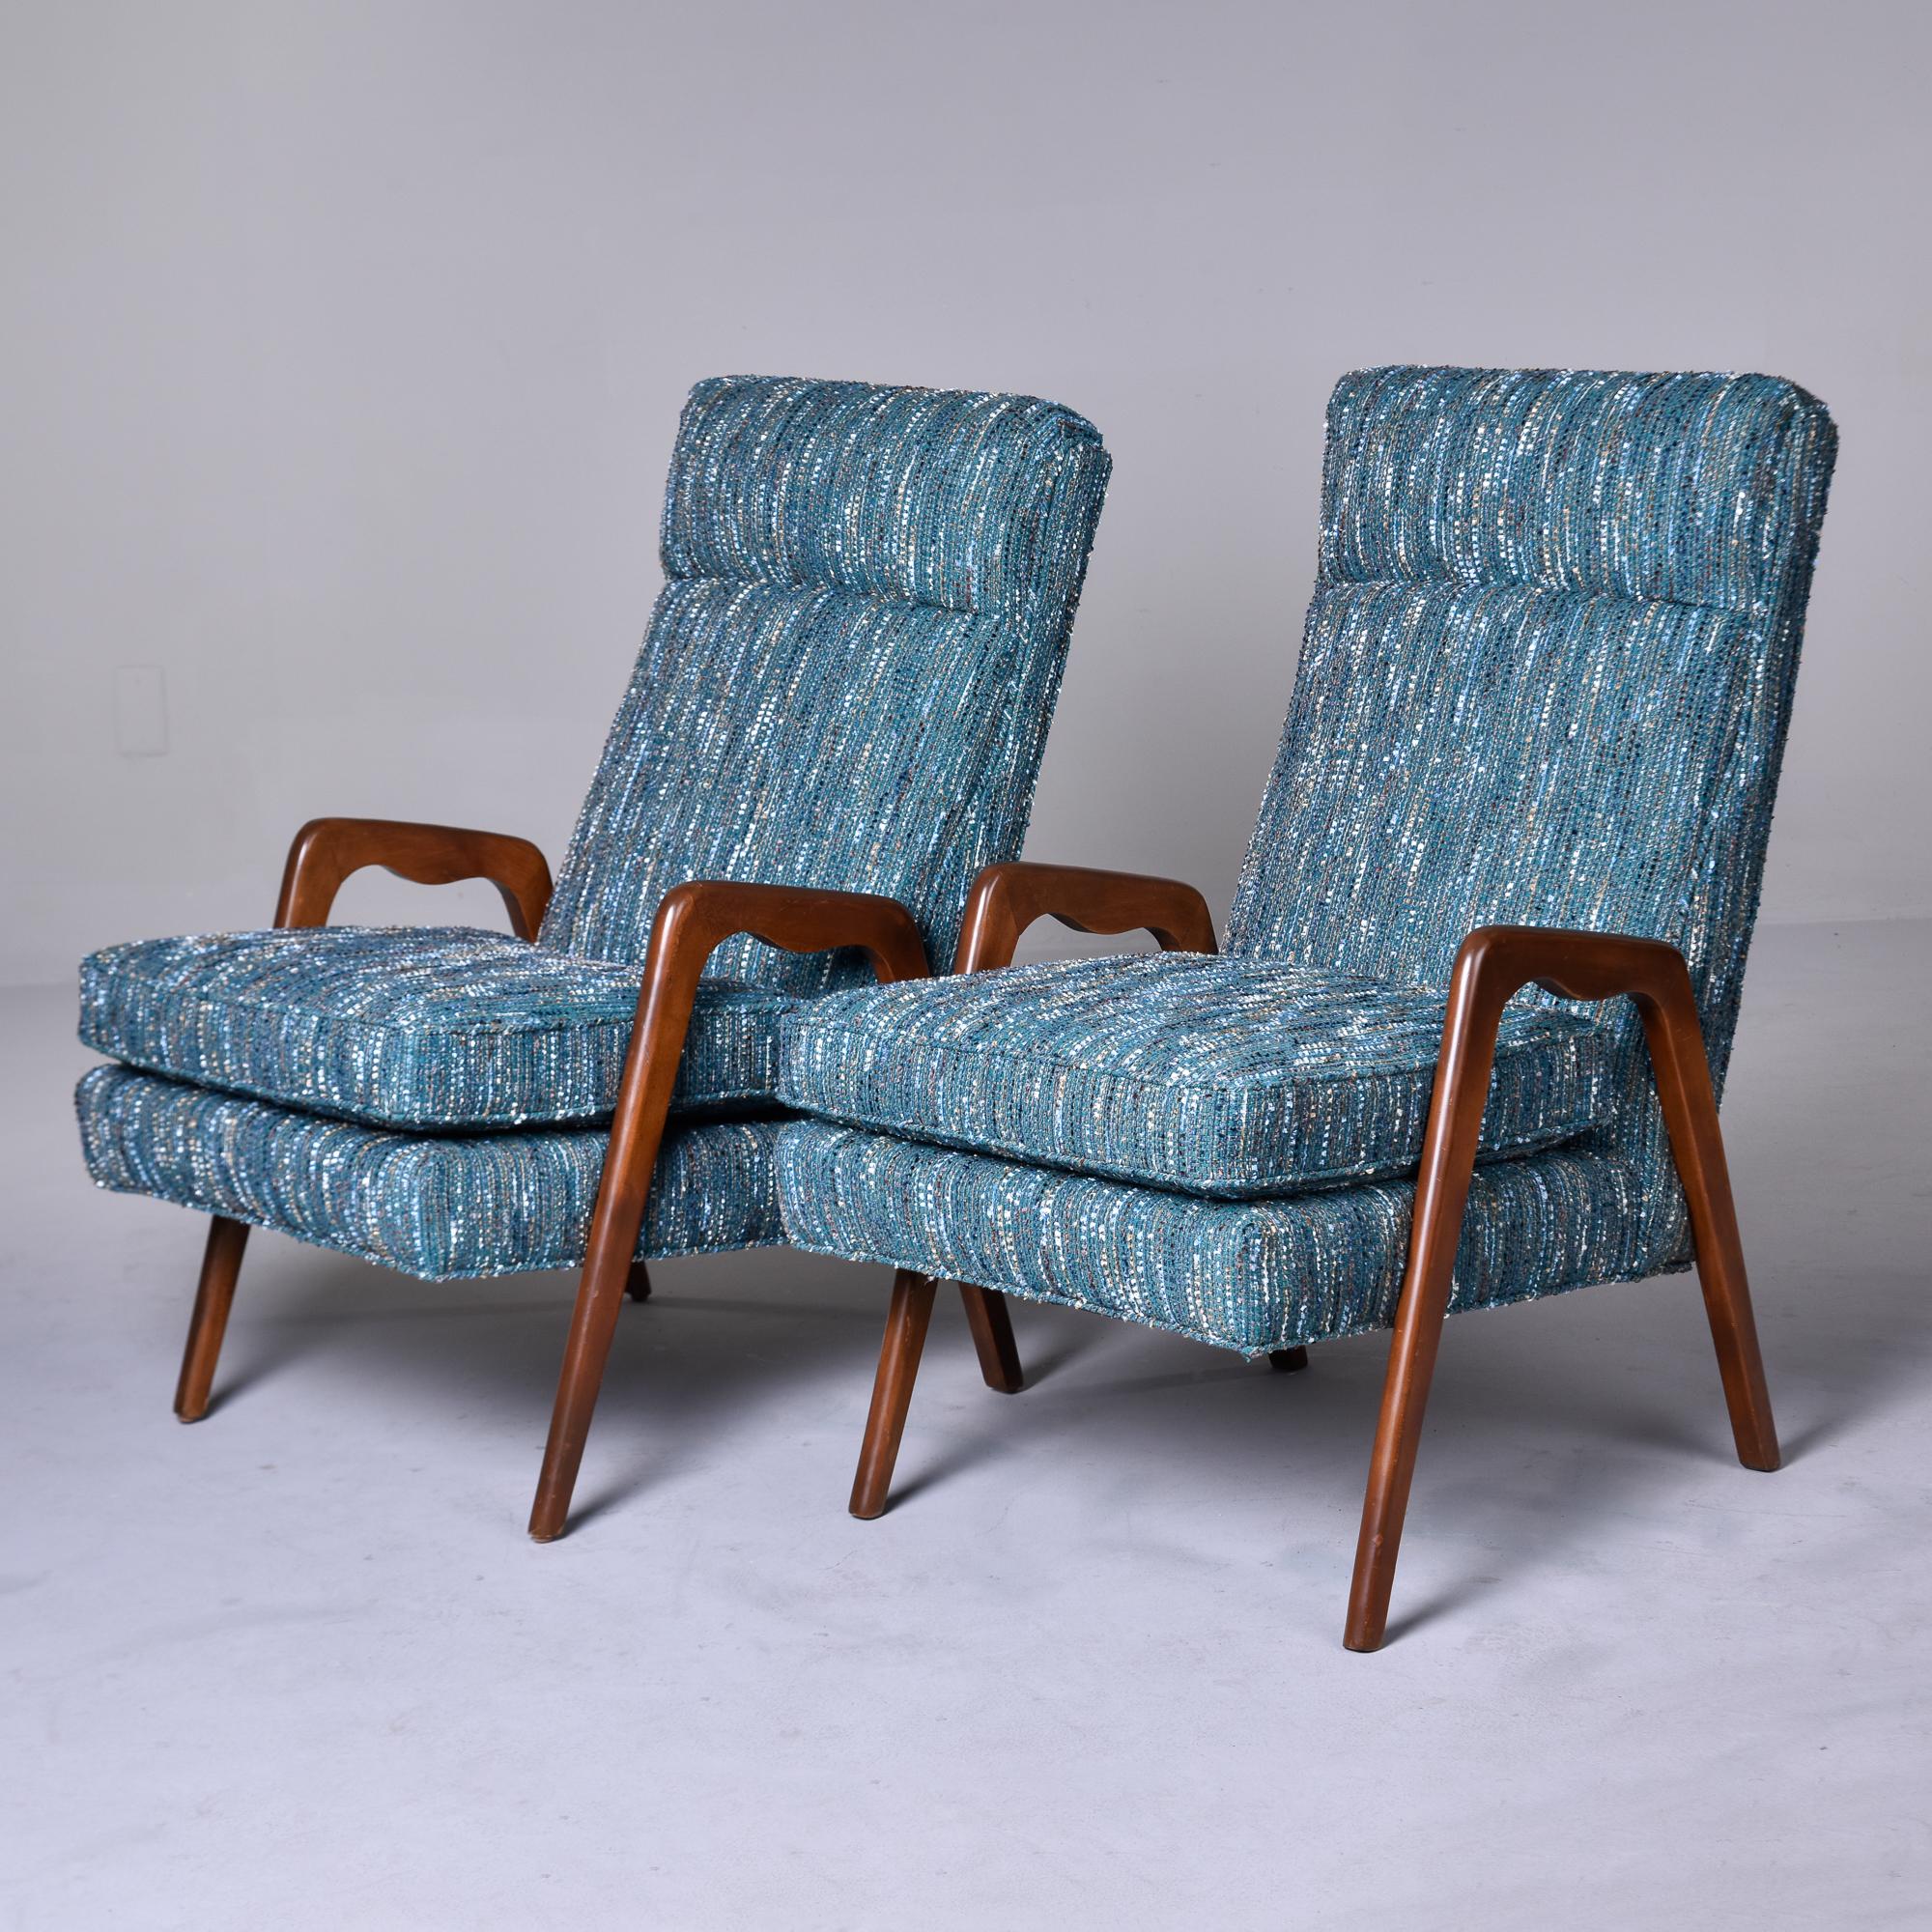 Dieses in Italien gefundene Paar von Sesseln aus den späten 1950er/frühen 1960er Jahren hat schlanke, sich verjüngende Arme und Beine aus dunkel gebeiztem Holz. Die hohen, schrägen Rückenlehnen haben eine gesäumte Kopfstütze. Die Stühle sind neu mit